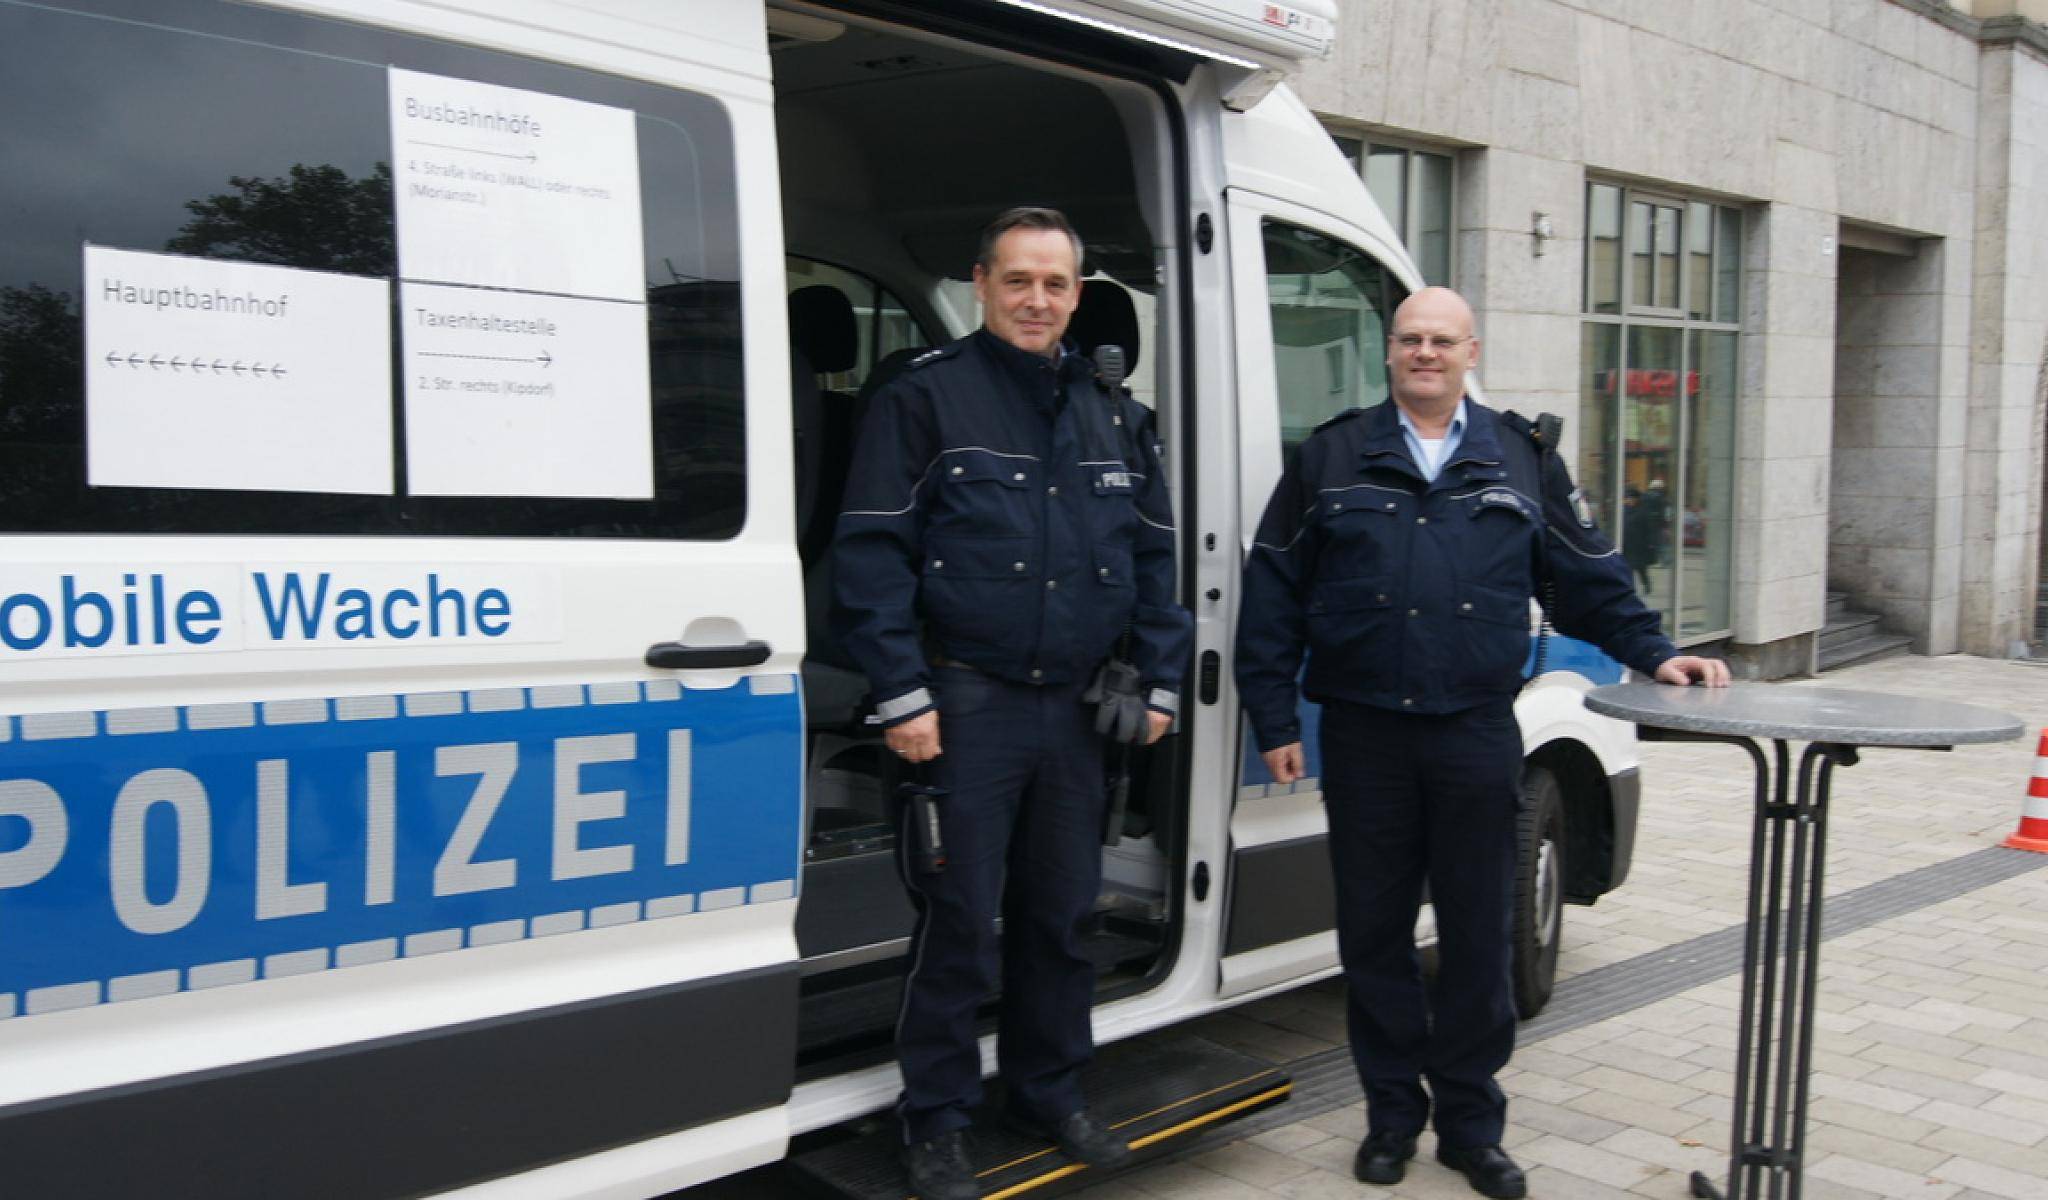  Andreas Wilke (links) und Achim Surborg sind zwei der 20 Beamten von der mobilen Wache direkt am Döppersberg. Durch ihren Dienst „zu Fuß“ sind sie nah an den Bürgern. 